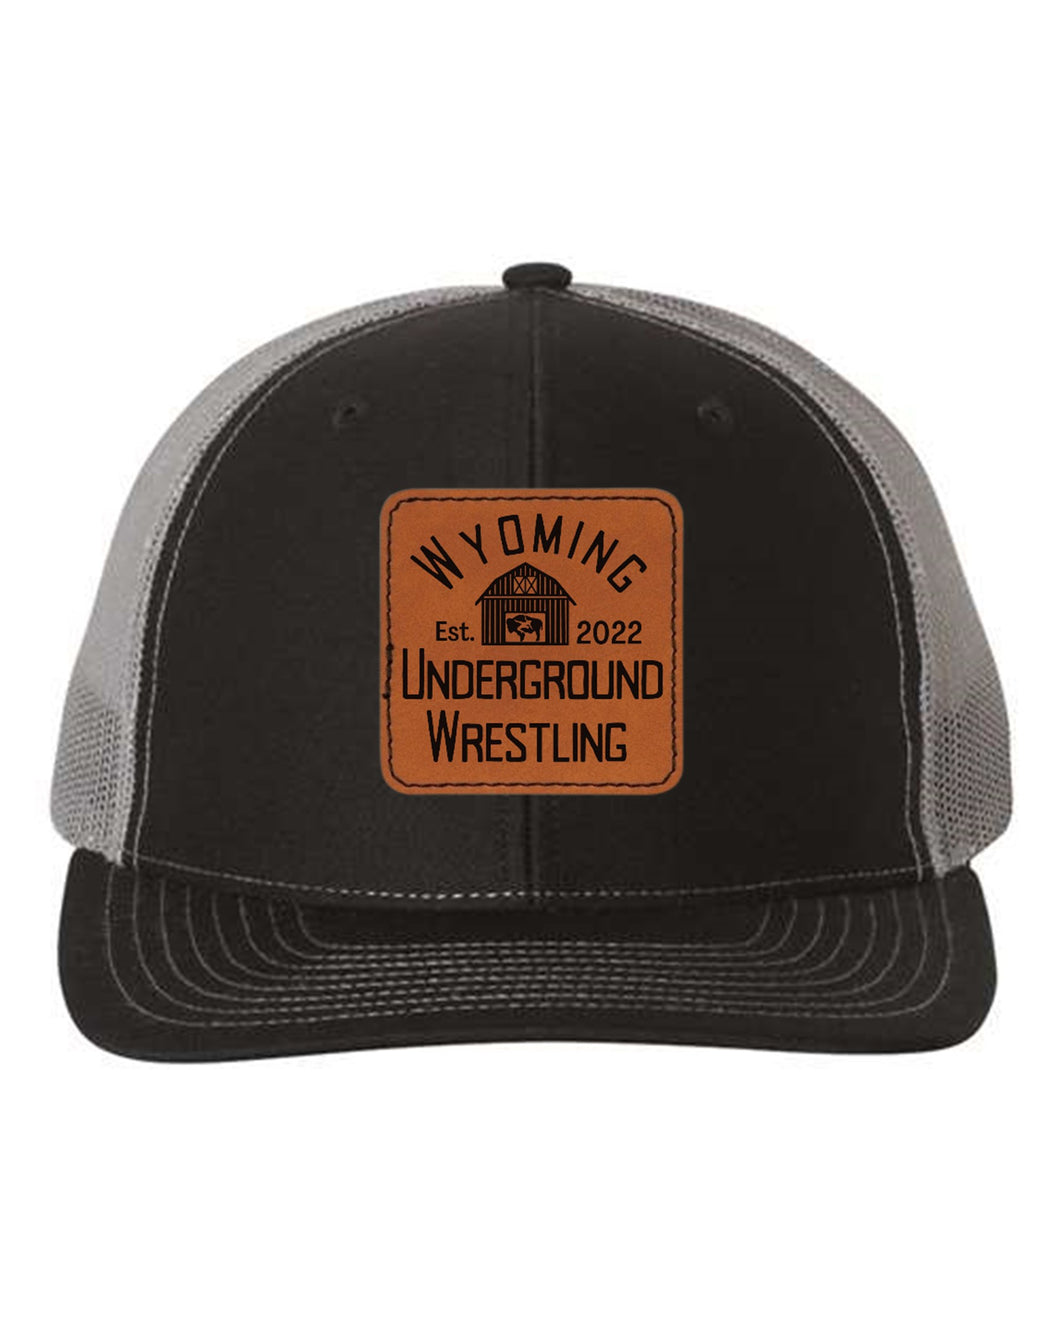 Wyoming Underground Wrestling Trucker Hat (Add'l Styles)